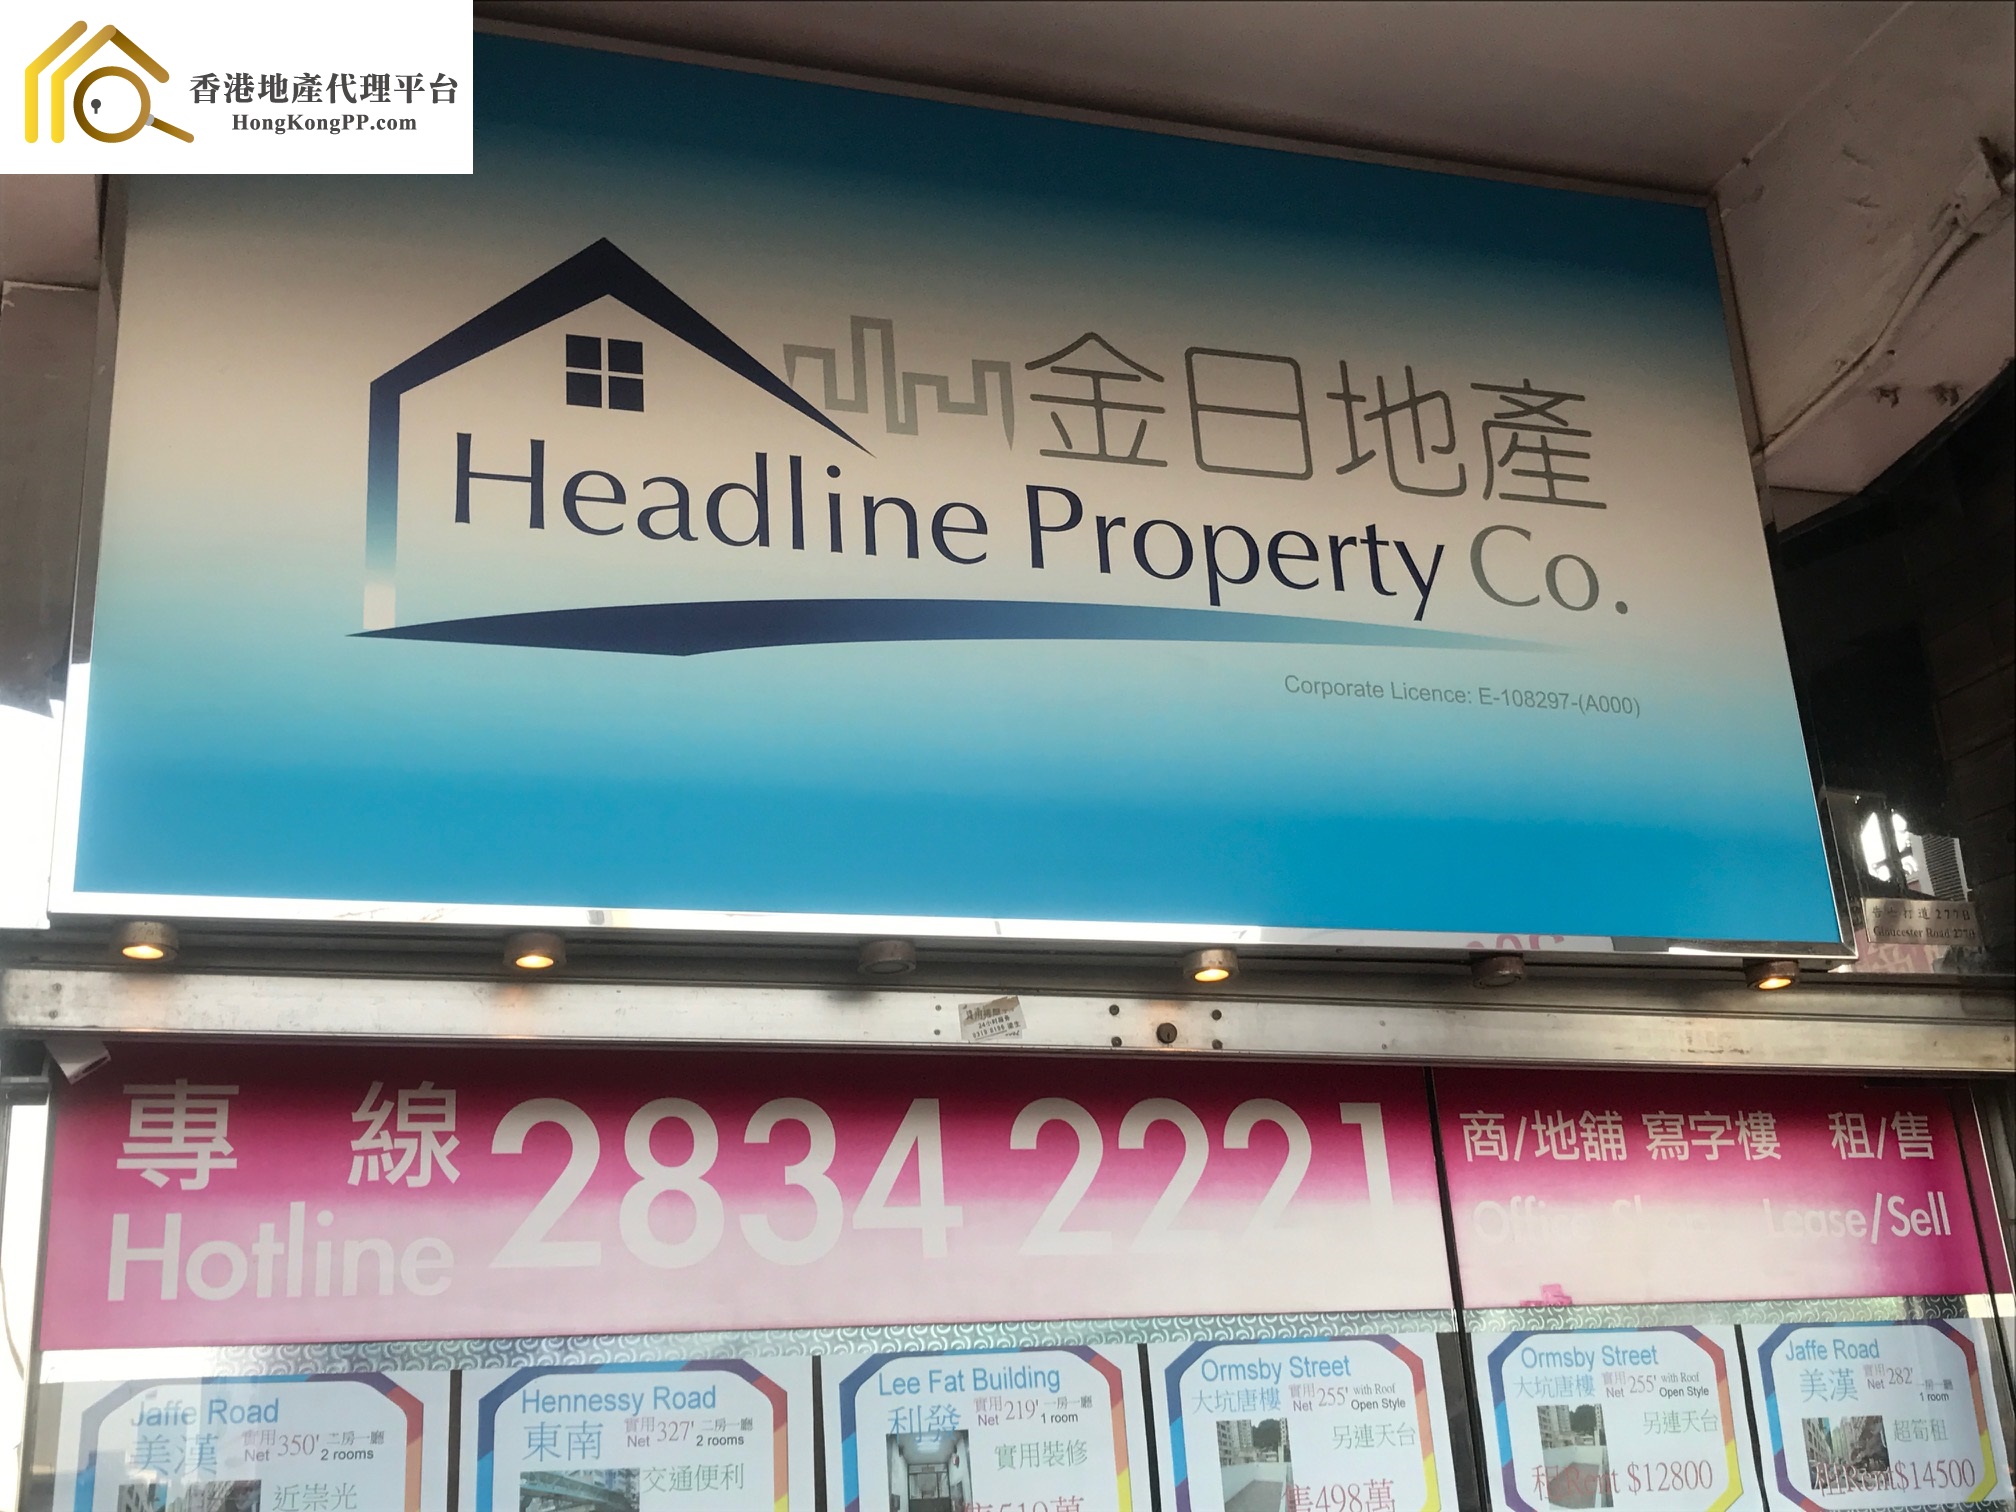 住宅地產代理: 金日地產 Headline Property